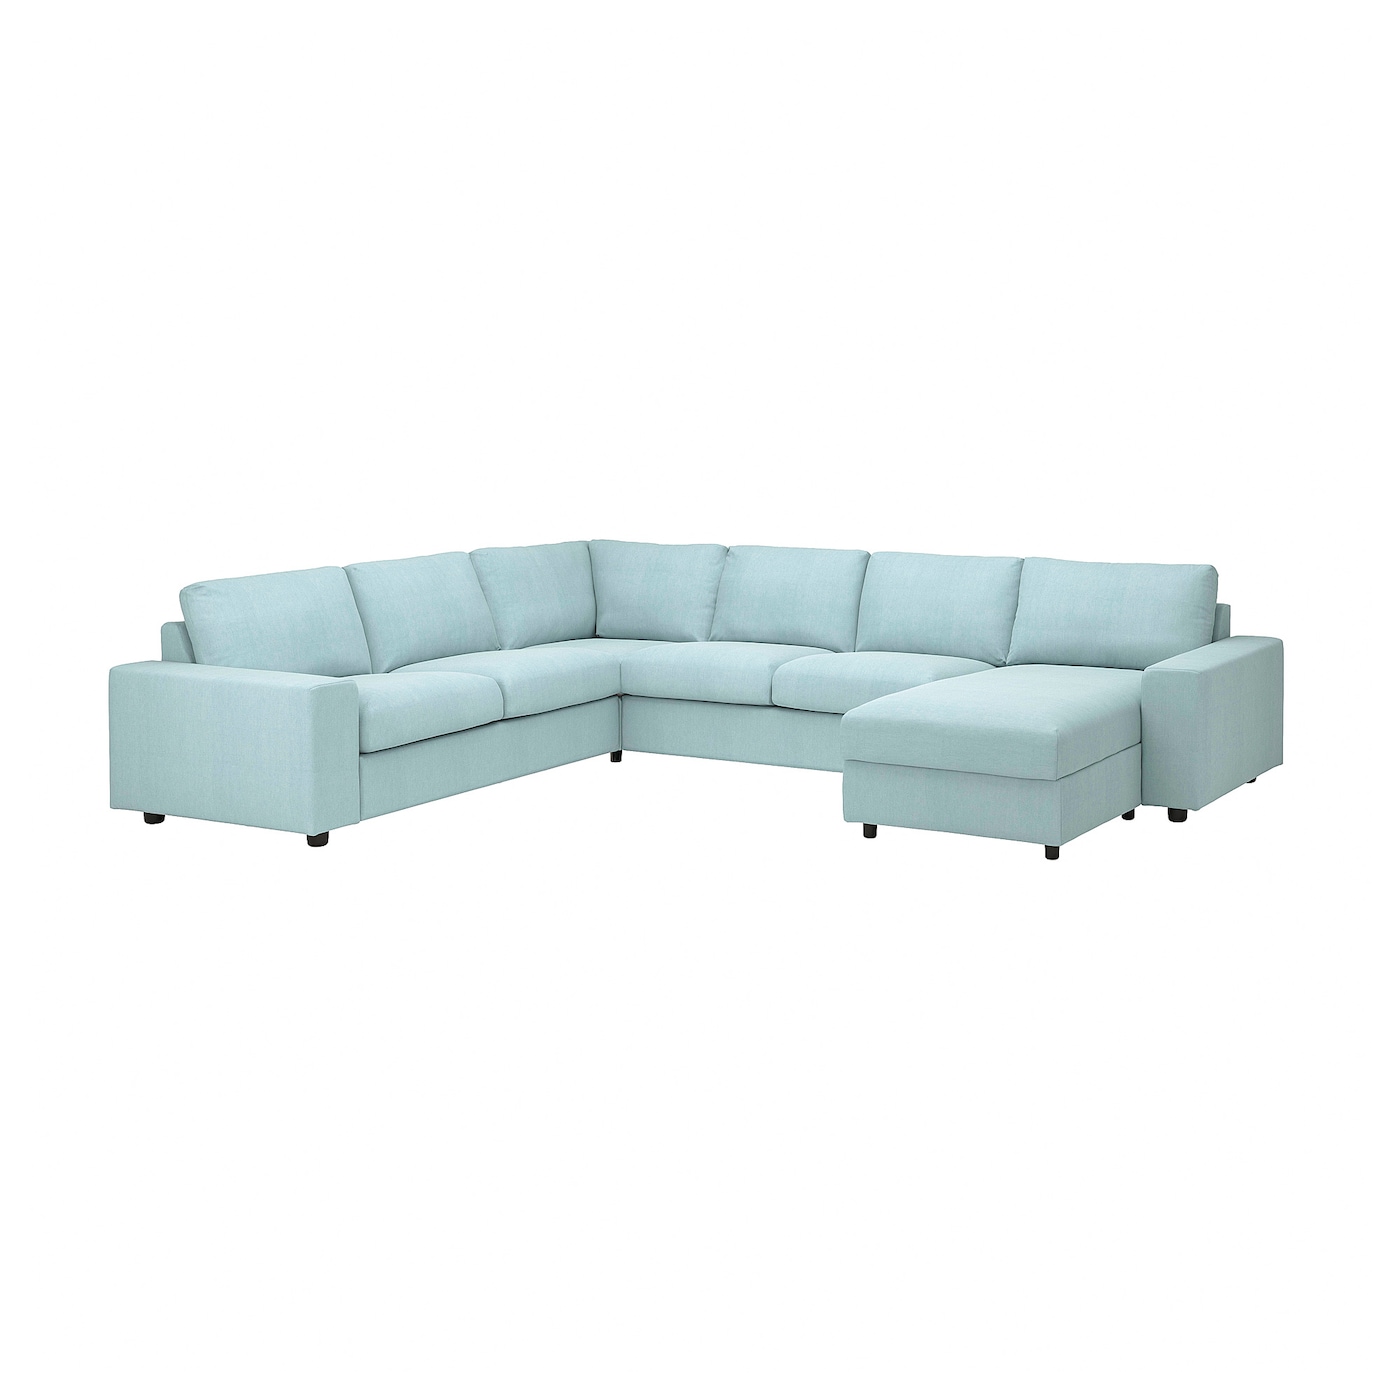 ВИМЛЕ Диван угловой, 5-местный. диван+диван, с широкими подлокотниками/Саксемара светло-синий VIMLE IKEA угловой диван fortune шоколадный